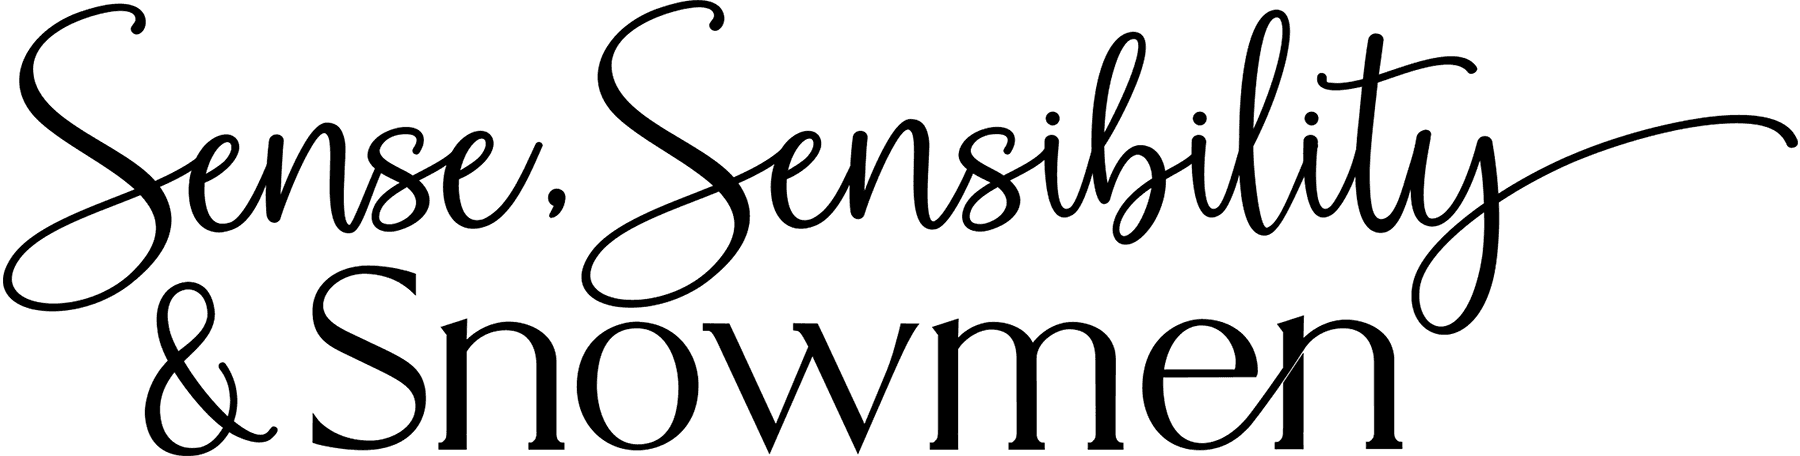 Sense, Sensibility & Snowmen logo